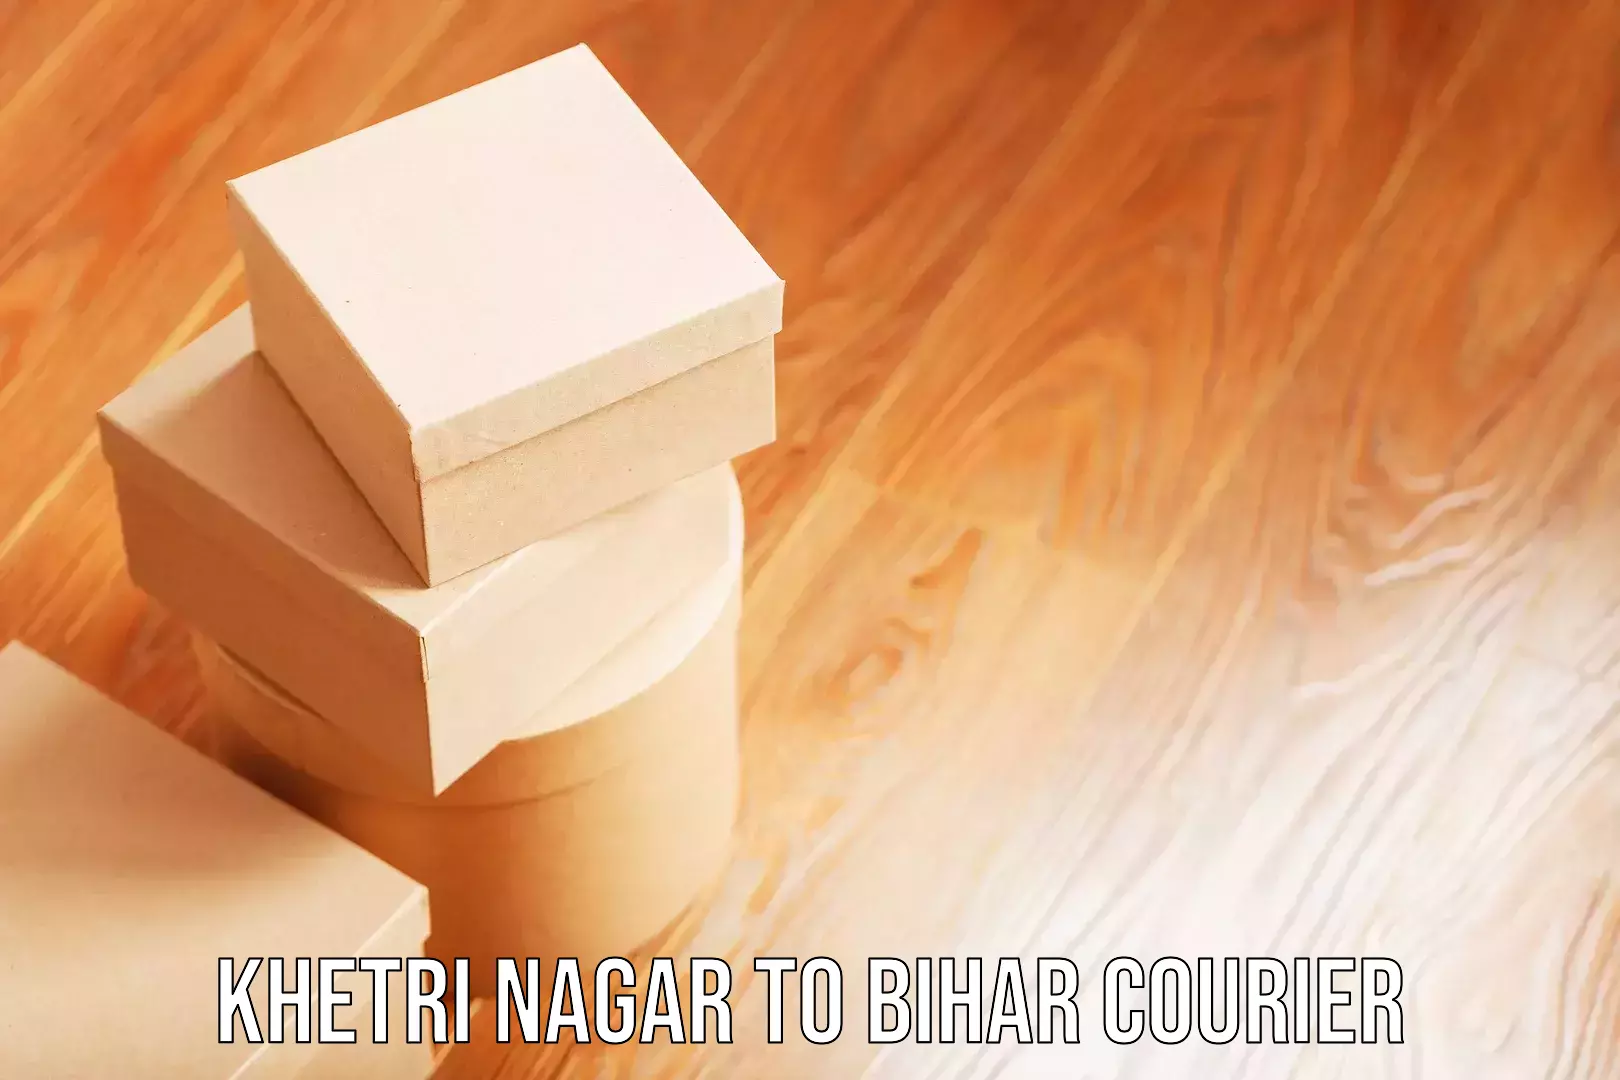 Baggage delivery optimization Khetri Nagar to Saran